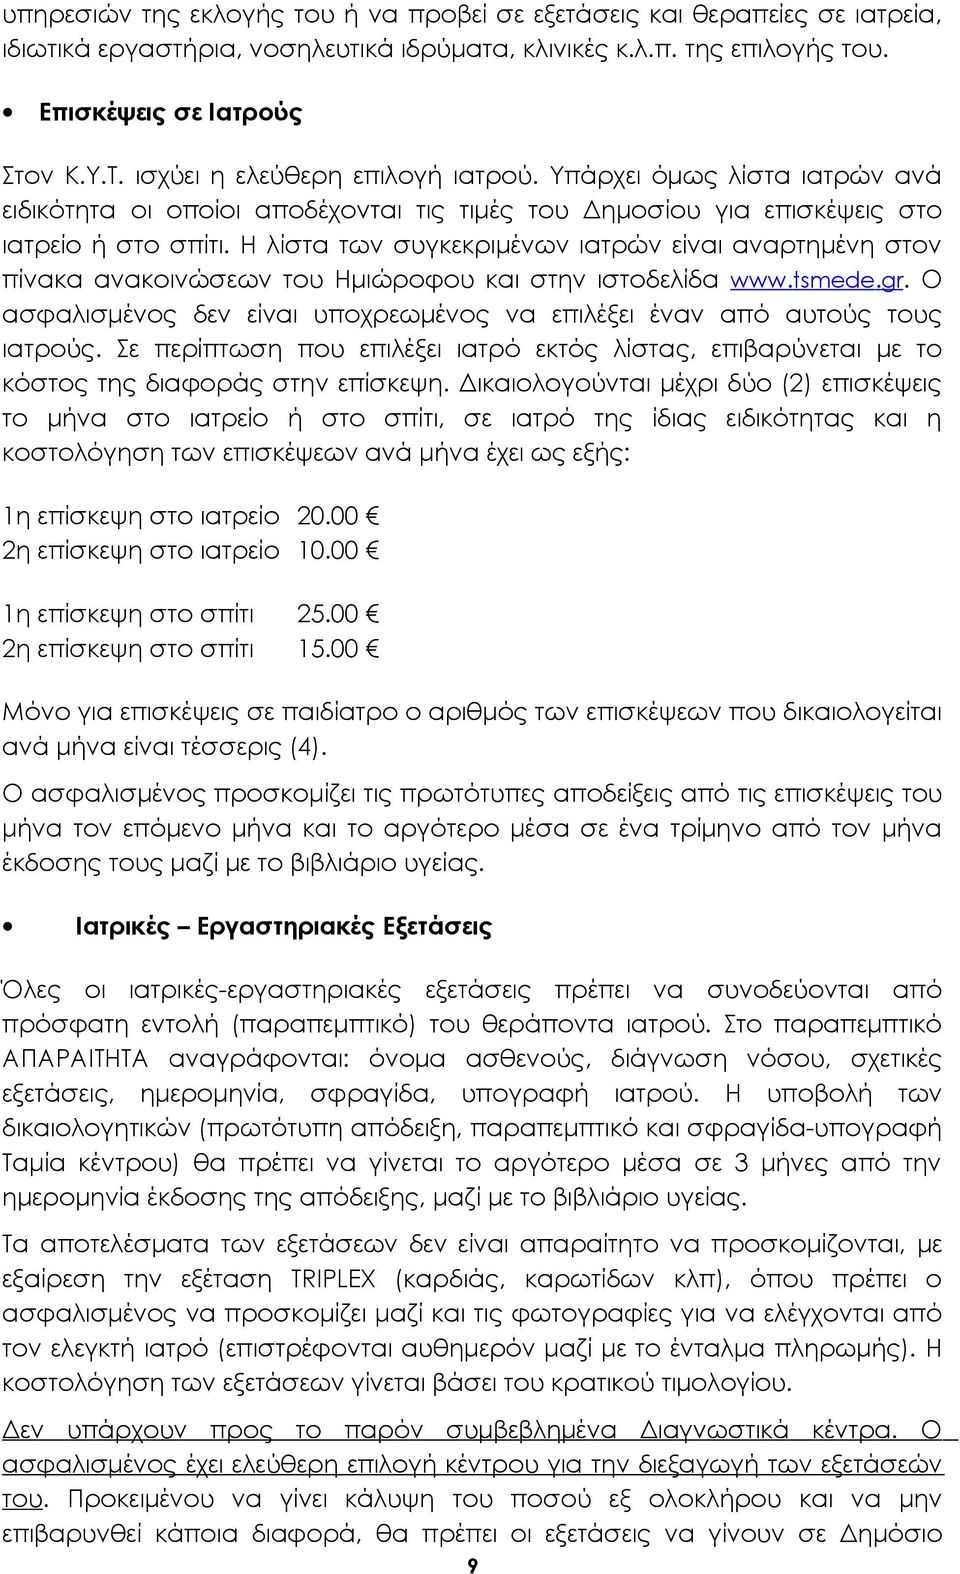 Η λίστα των συγκεκριμένων ιατρών είναι αναρτημένη στον πίνακα ανακοινώσεων του Ημιώροφου και στην ιστοδελίδα www.tsmede.gr.